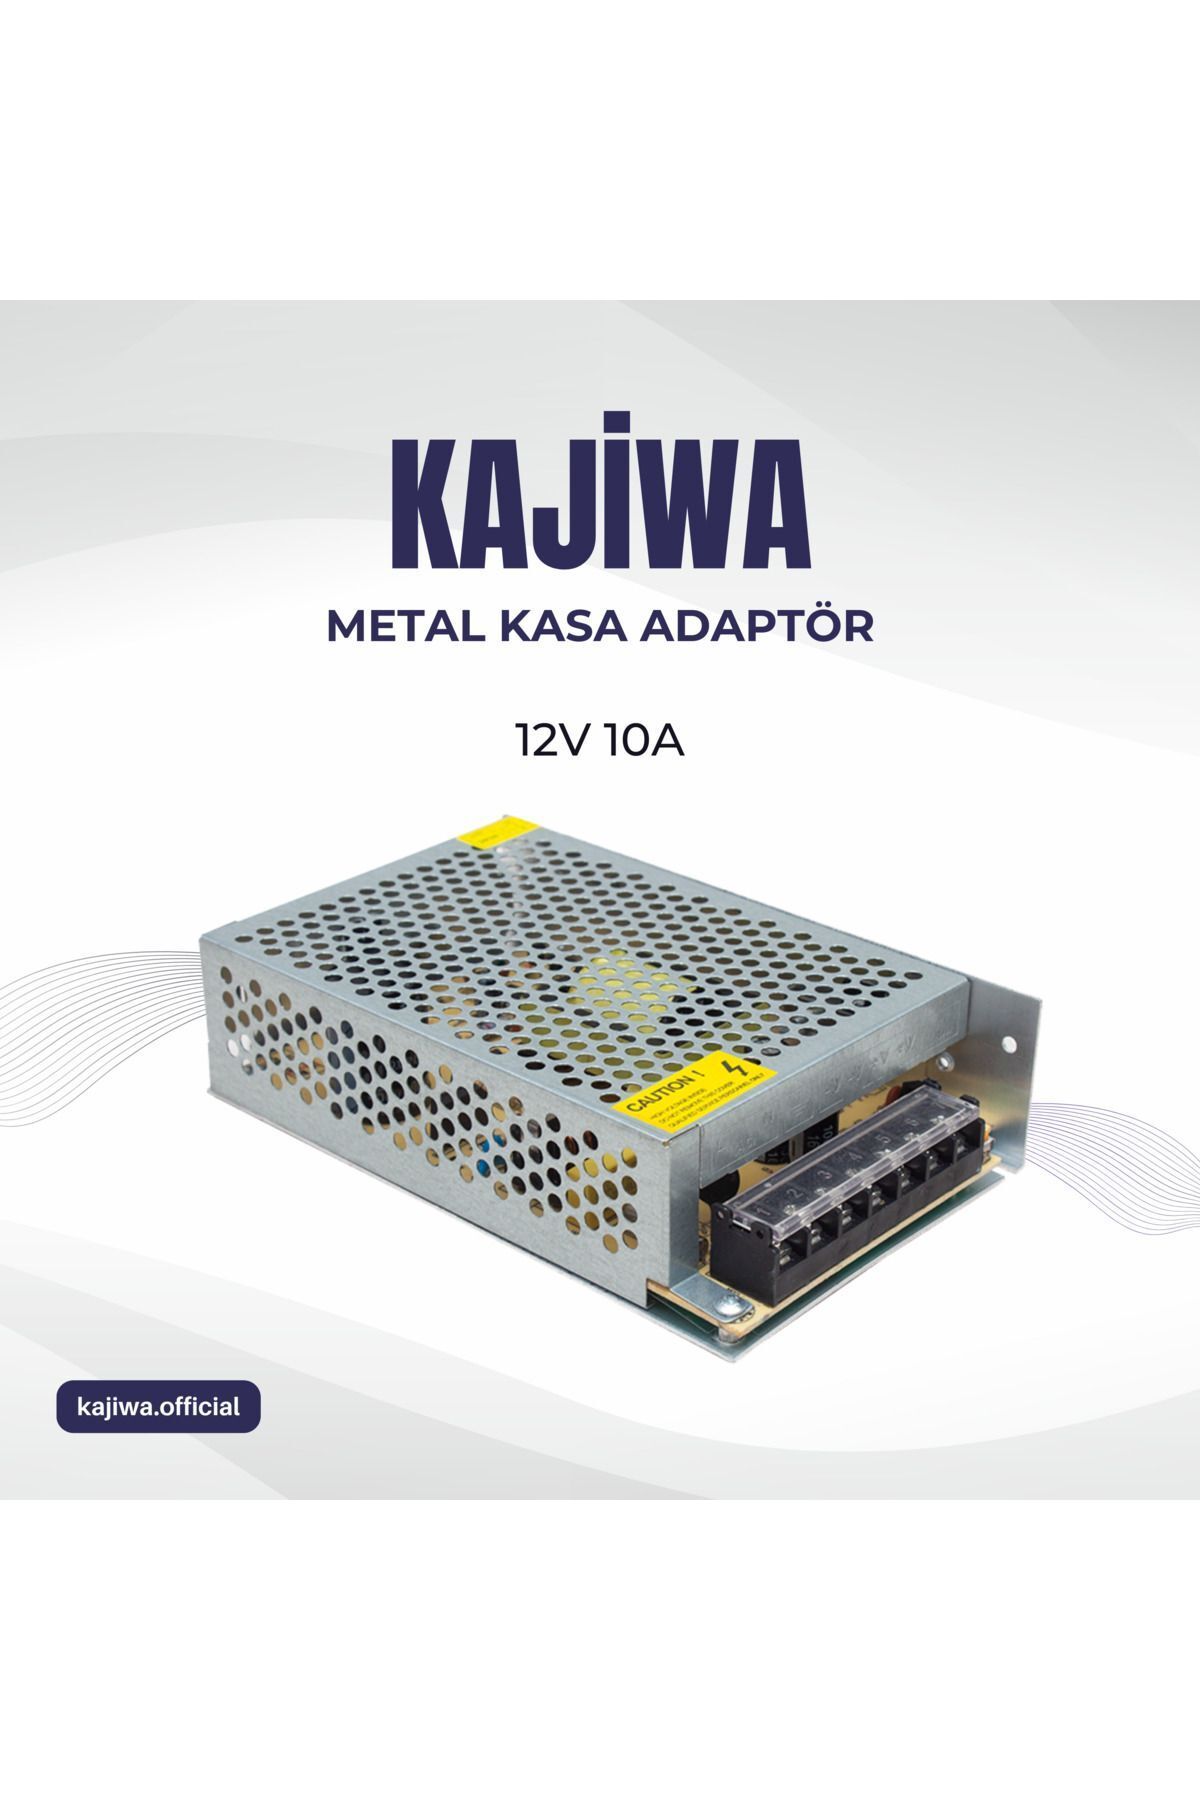 KAJİWA Mervesan 12v 10a Metal Kasa Adaptör - Trafo 120 Watt -mrwpower